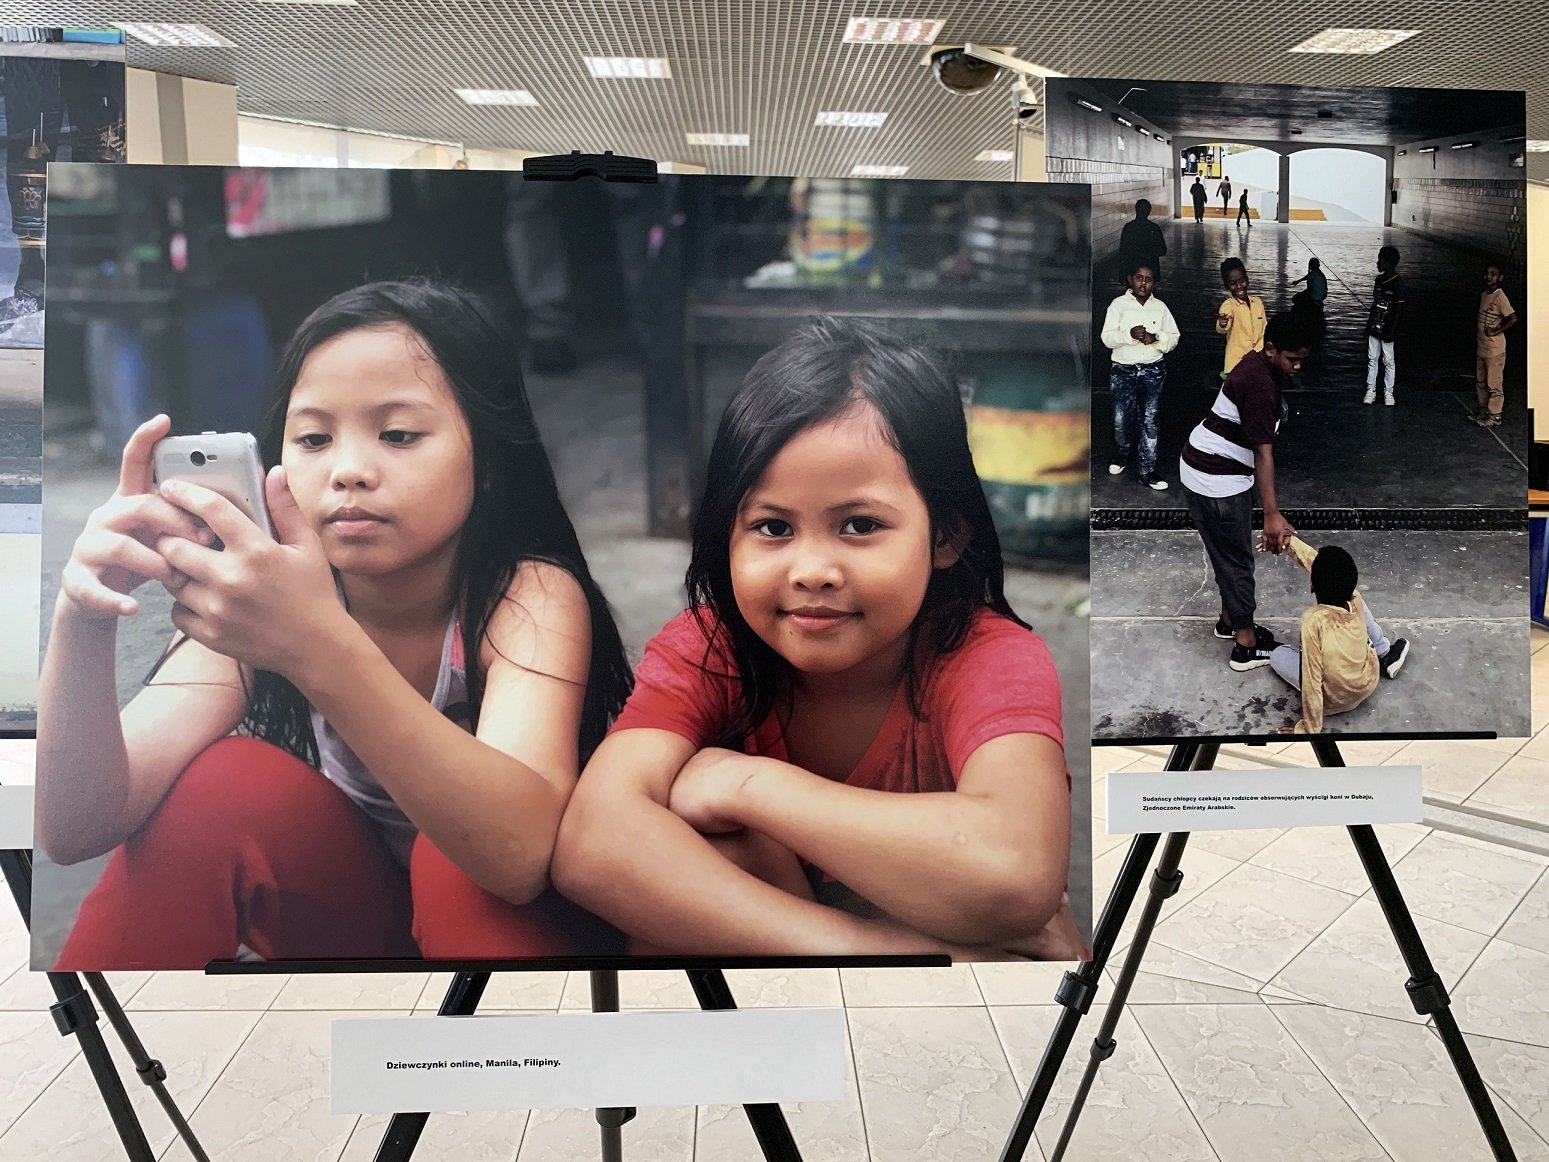 #inaczej #taksamo – Wystawa zdjęć dzieci autorstwa Anny Dudzińskiej w Bibliotece Śląskiej